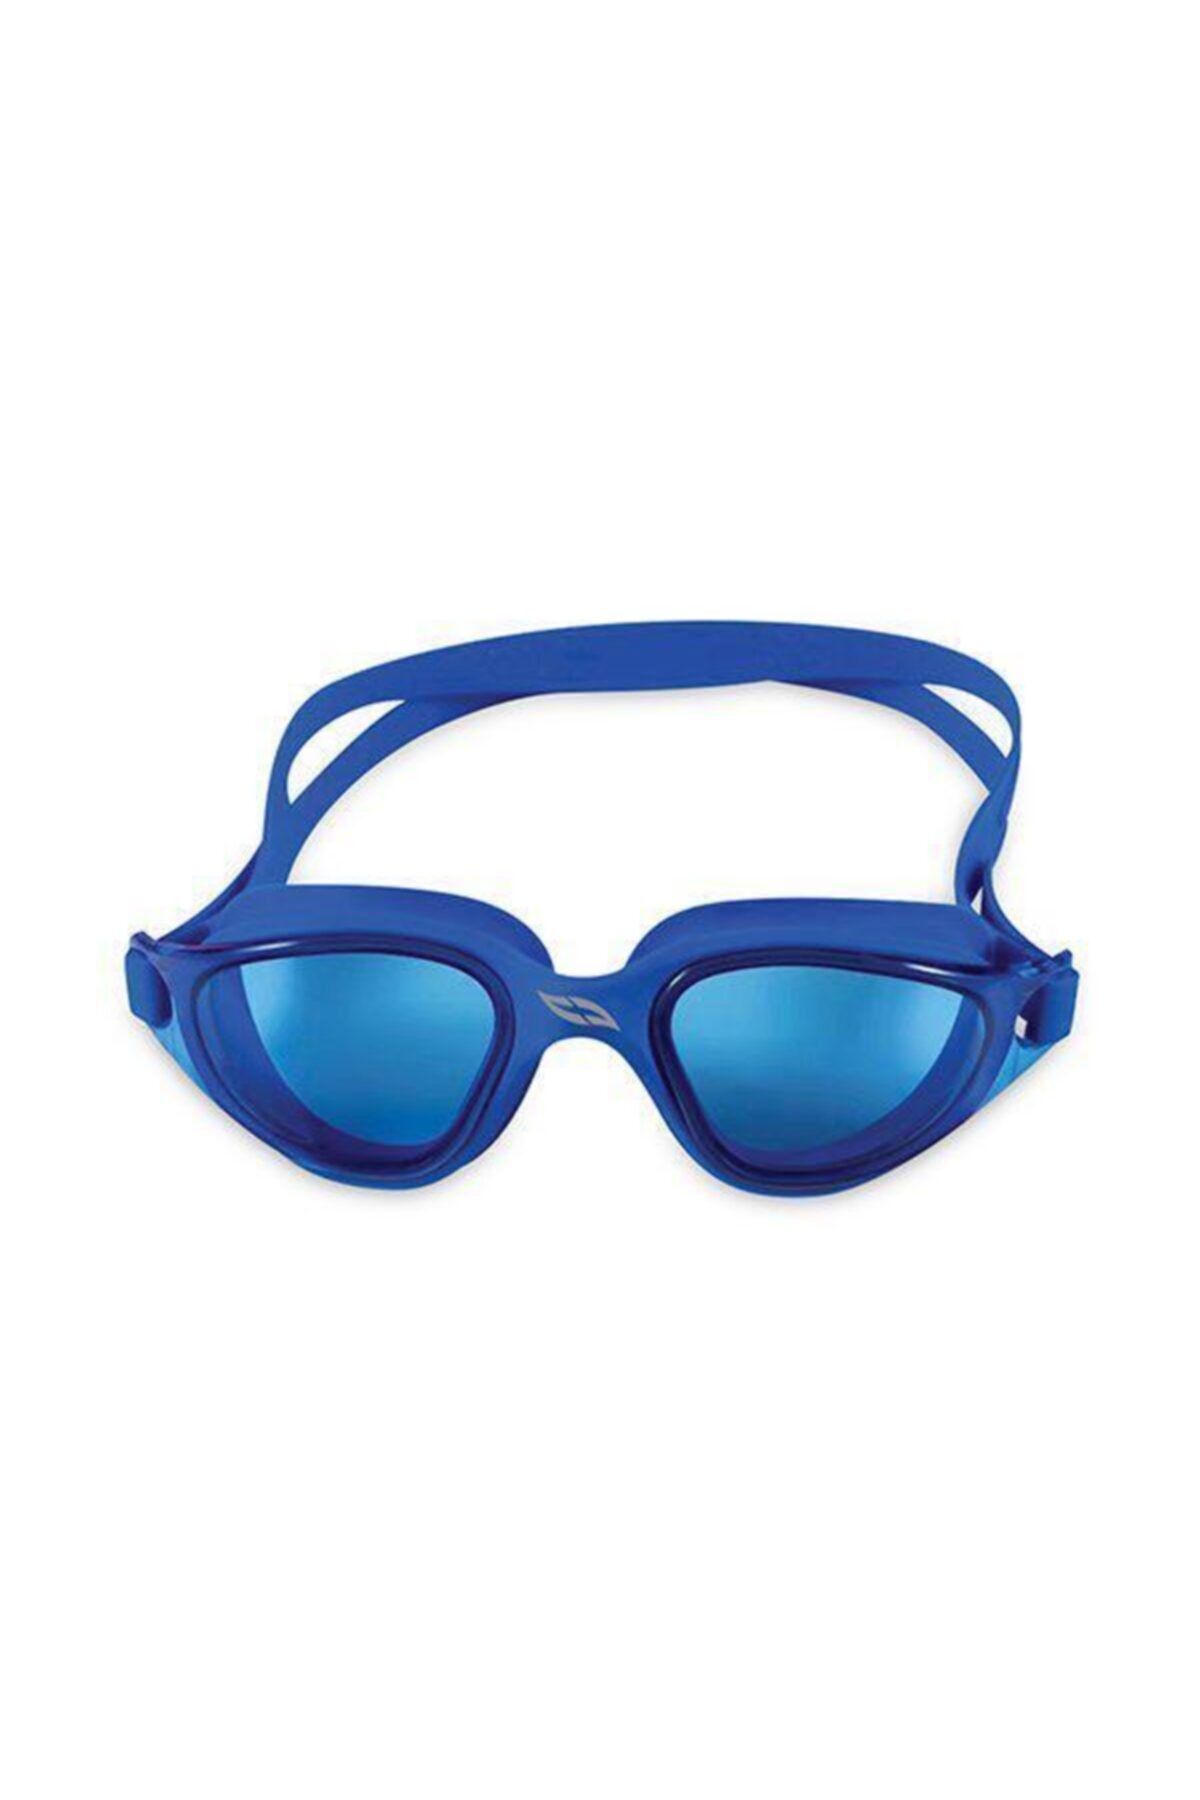 Voit Mavi Speed Yüzücü Gözlüğü